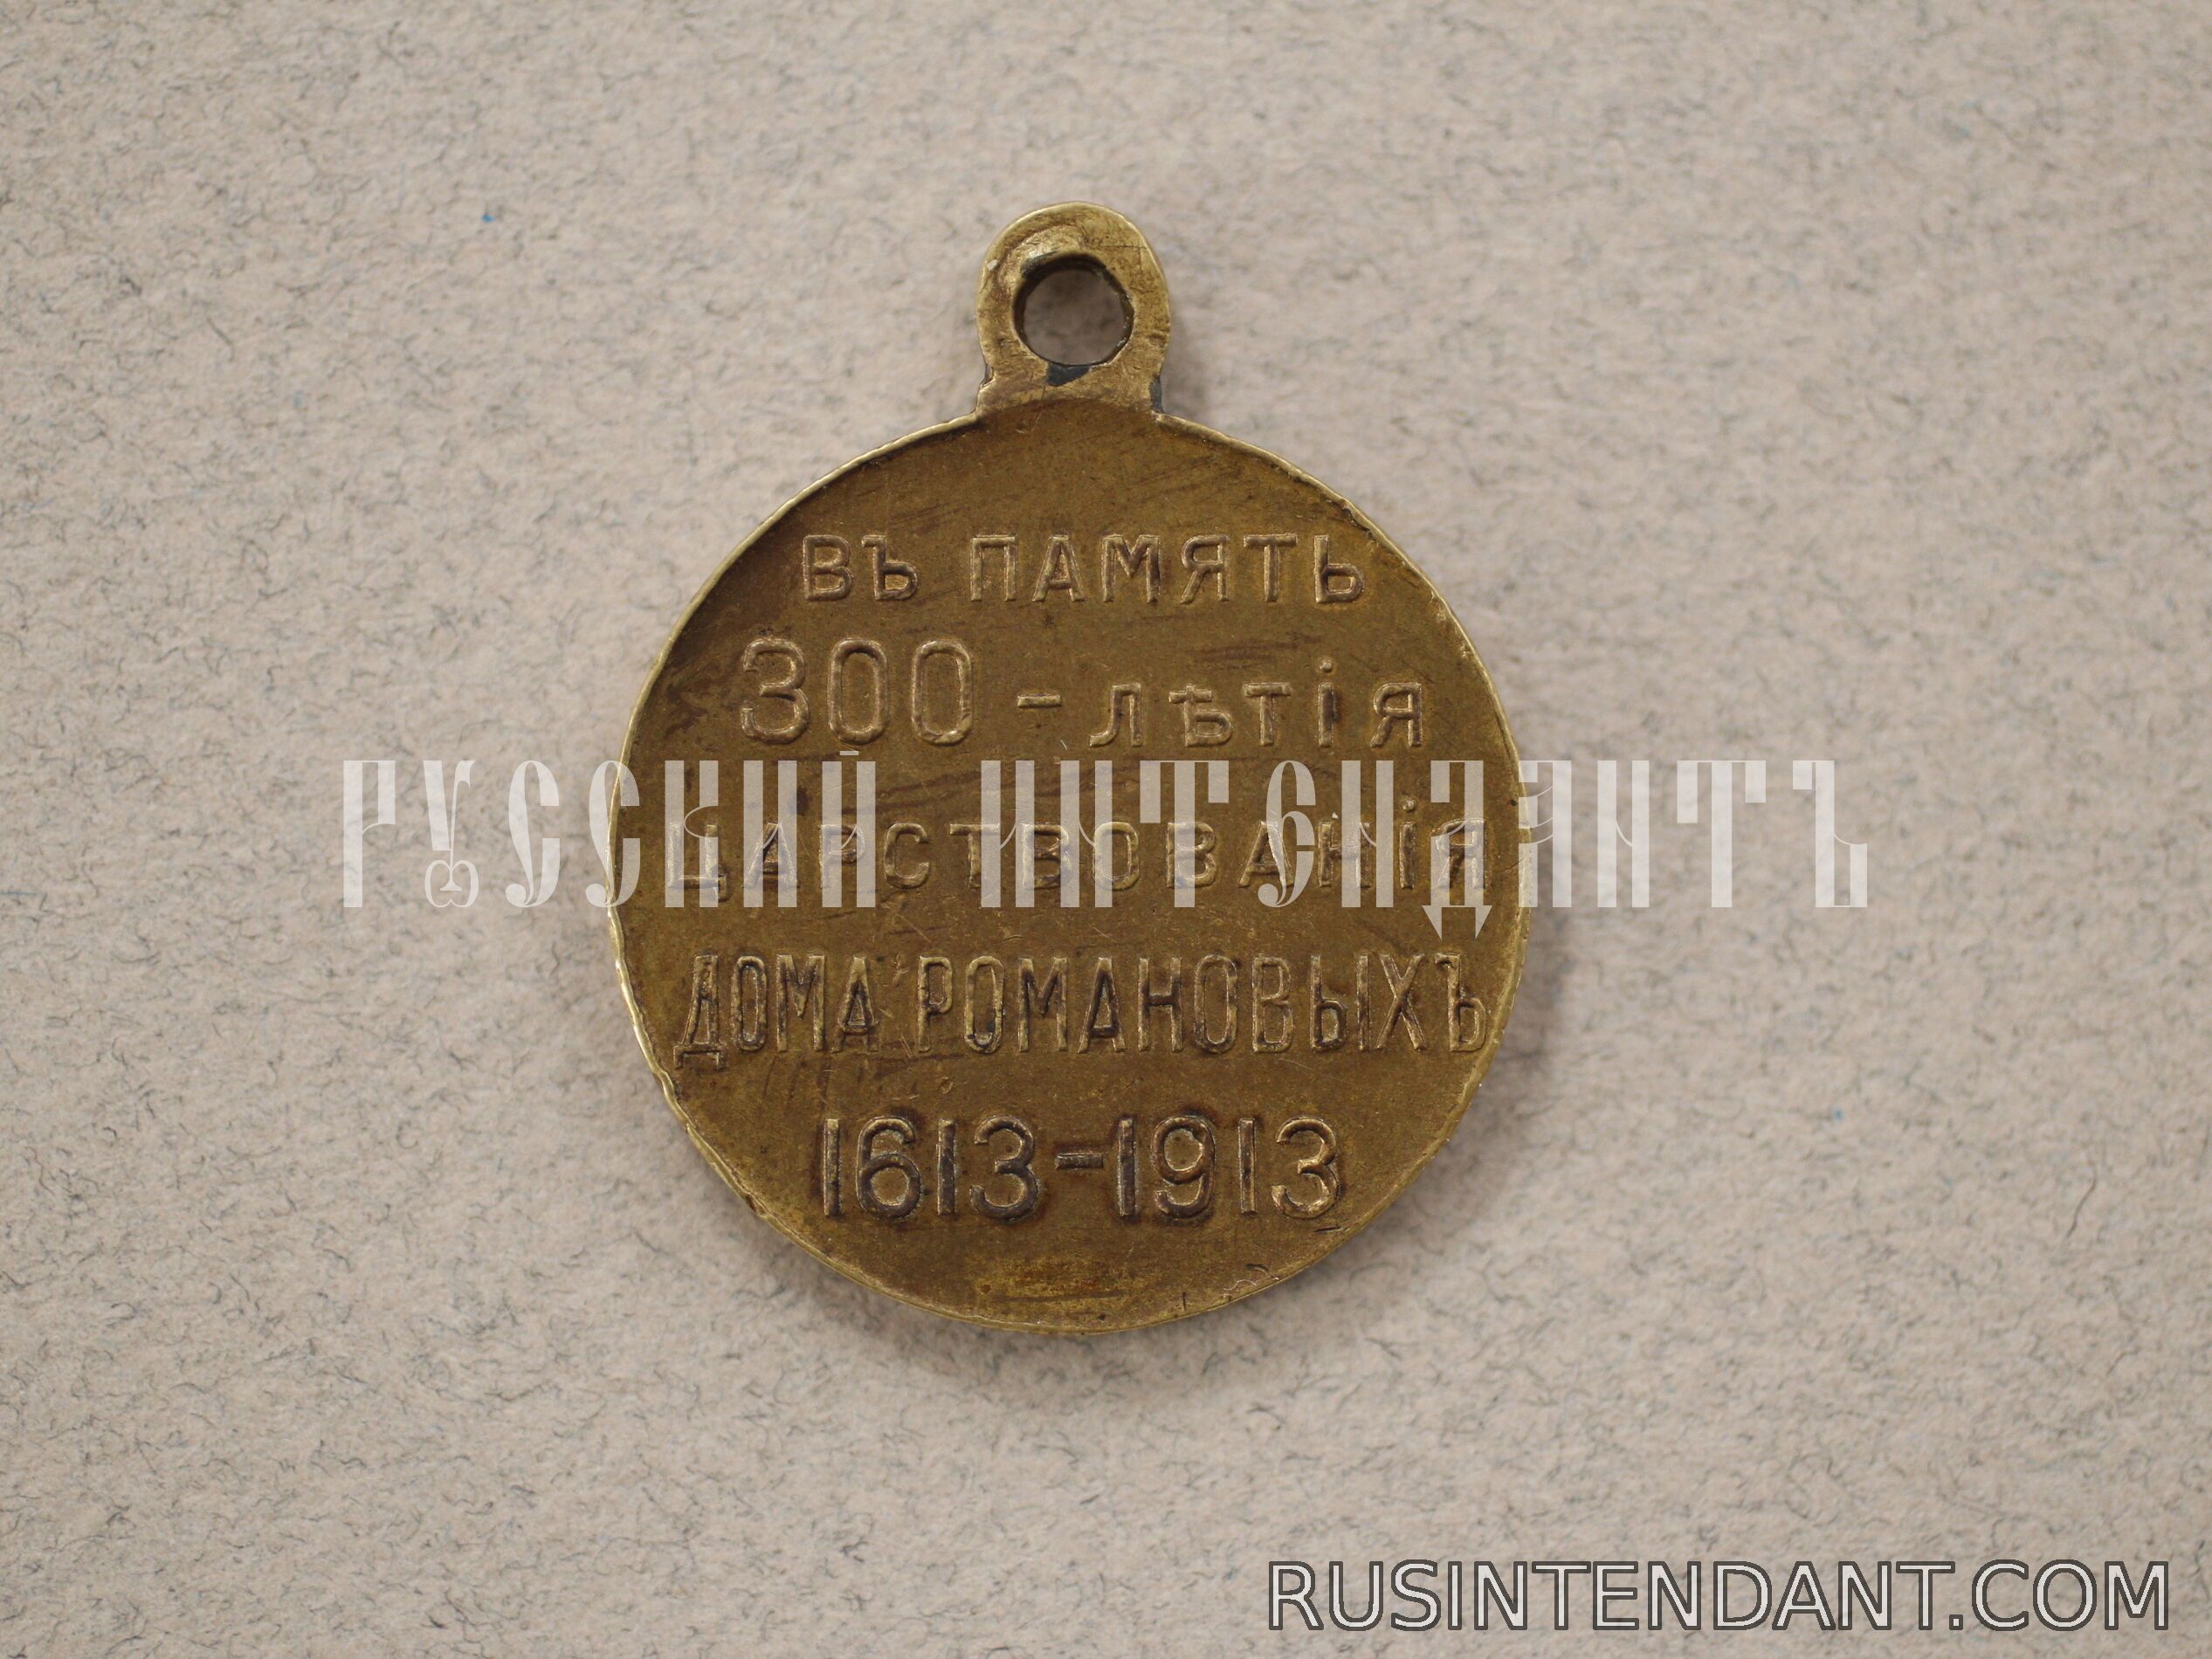 Фото 2: Юбилейная медаль «В память 300-летия царствования дома Романовых» 